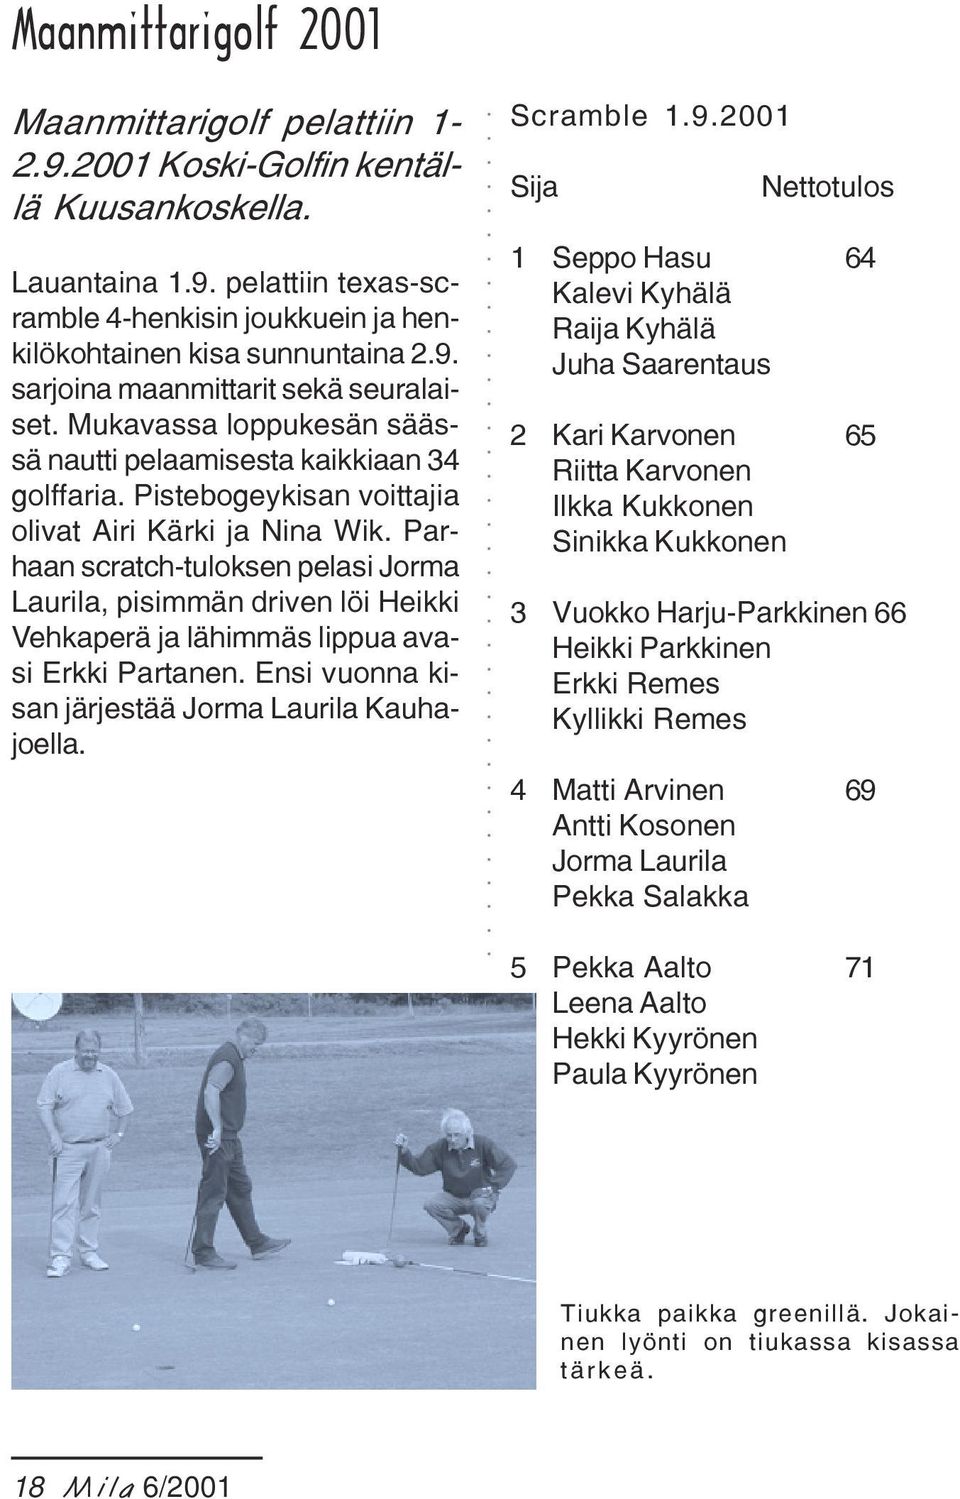 Parhaan scratch-tuloksen pelasi Jorma Laurila, pisimmän driven löi Heikki Vehkaperä ja lähimmäs lippua avasi Erkki Partanen. Ensi vuonna kisan järjestää Jorma Laurila Kauhajoella. Scramble 1.9.